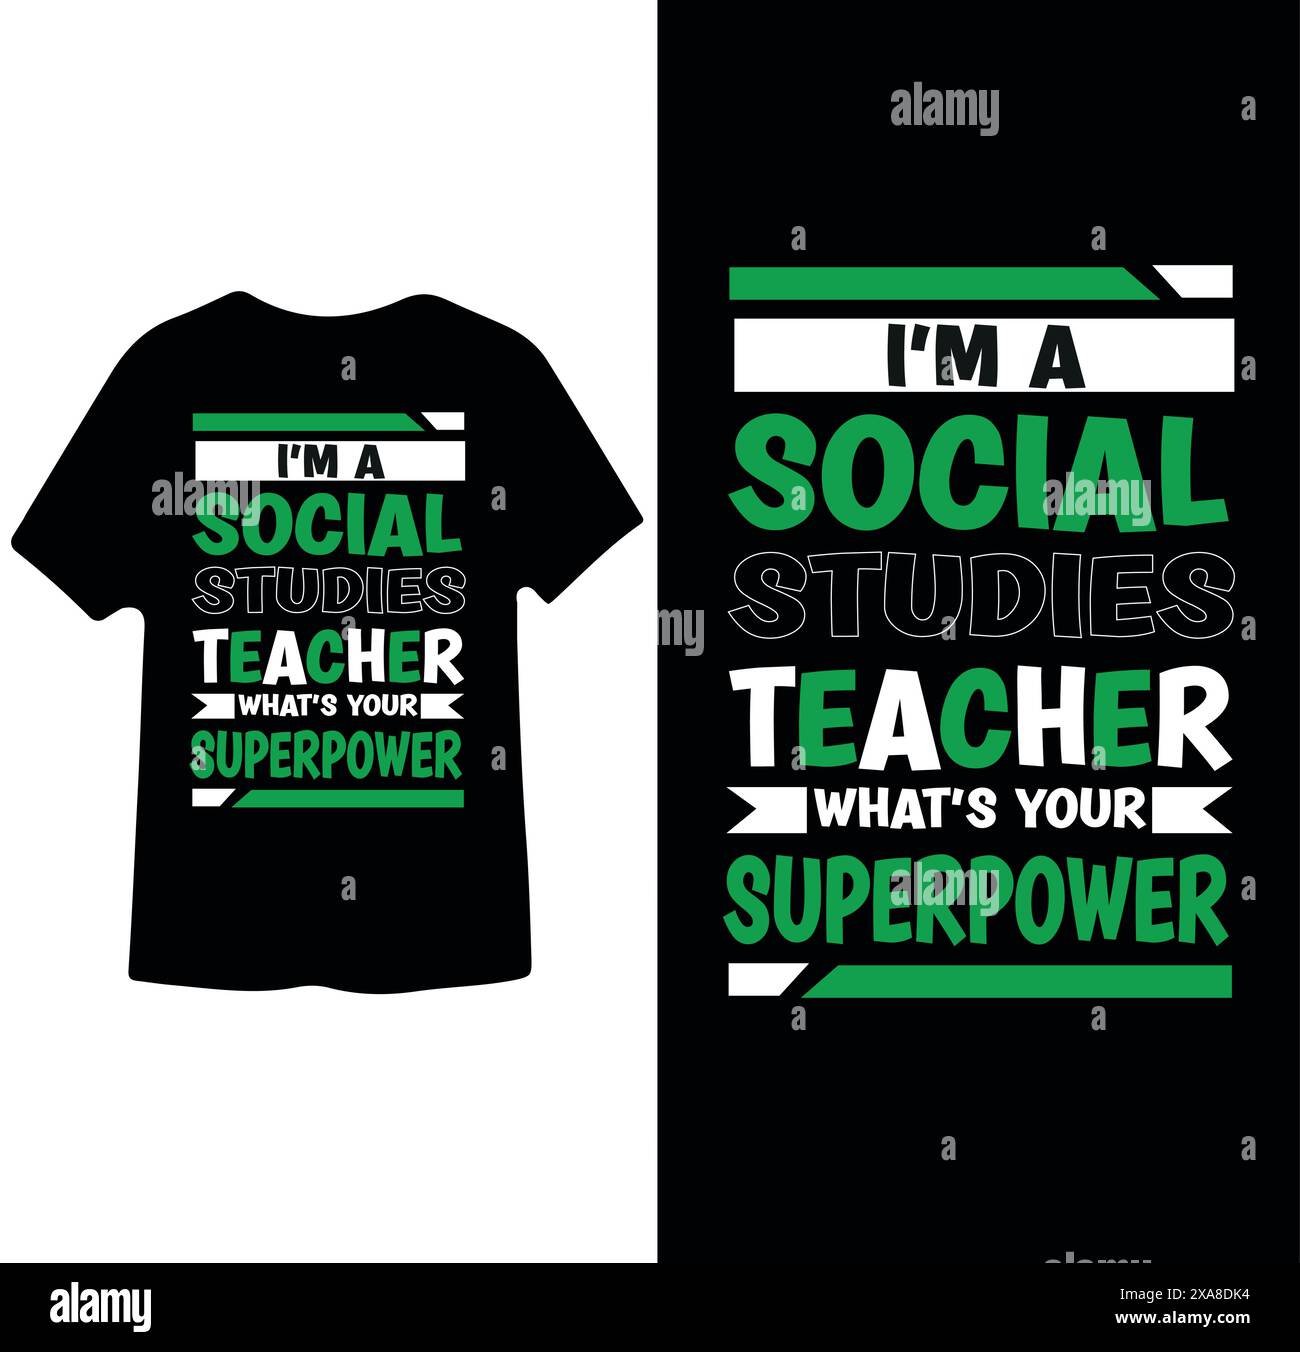 Sono un insegnante di studi sociali qual è il tuo superpotere, insegnante t-shirt Design Illustrazione Vettoriale